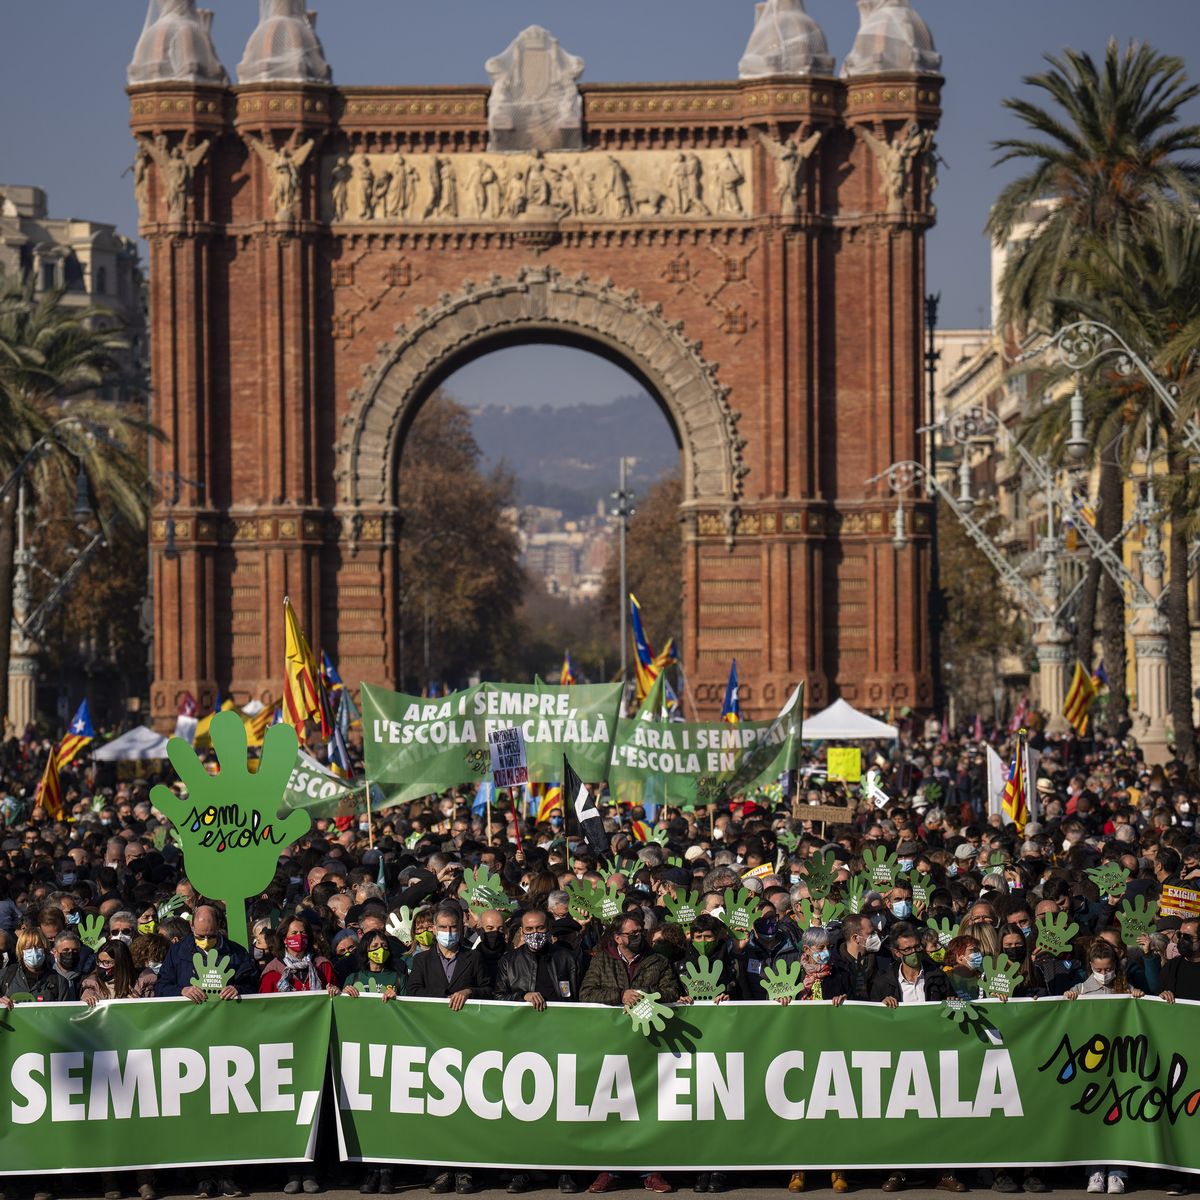 Catalanes protestan contra orden de enseñar más español en escuelas